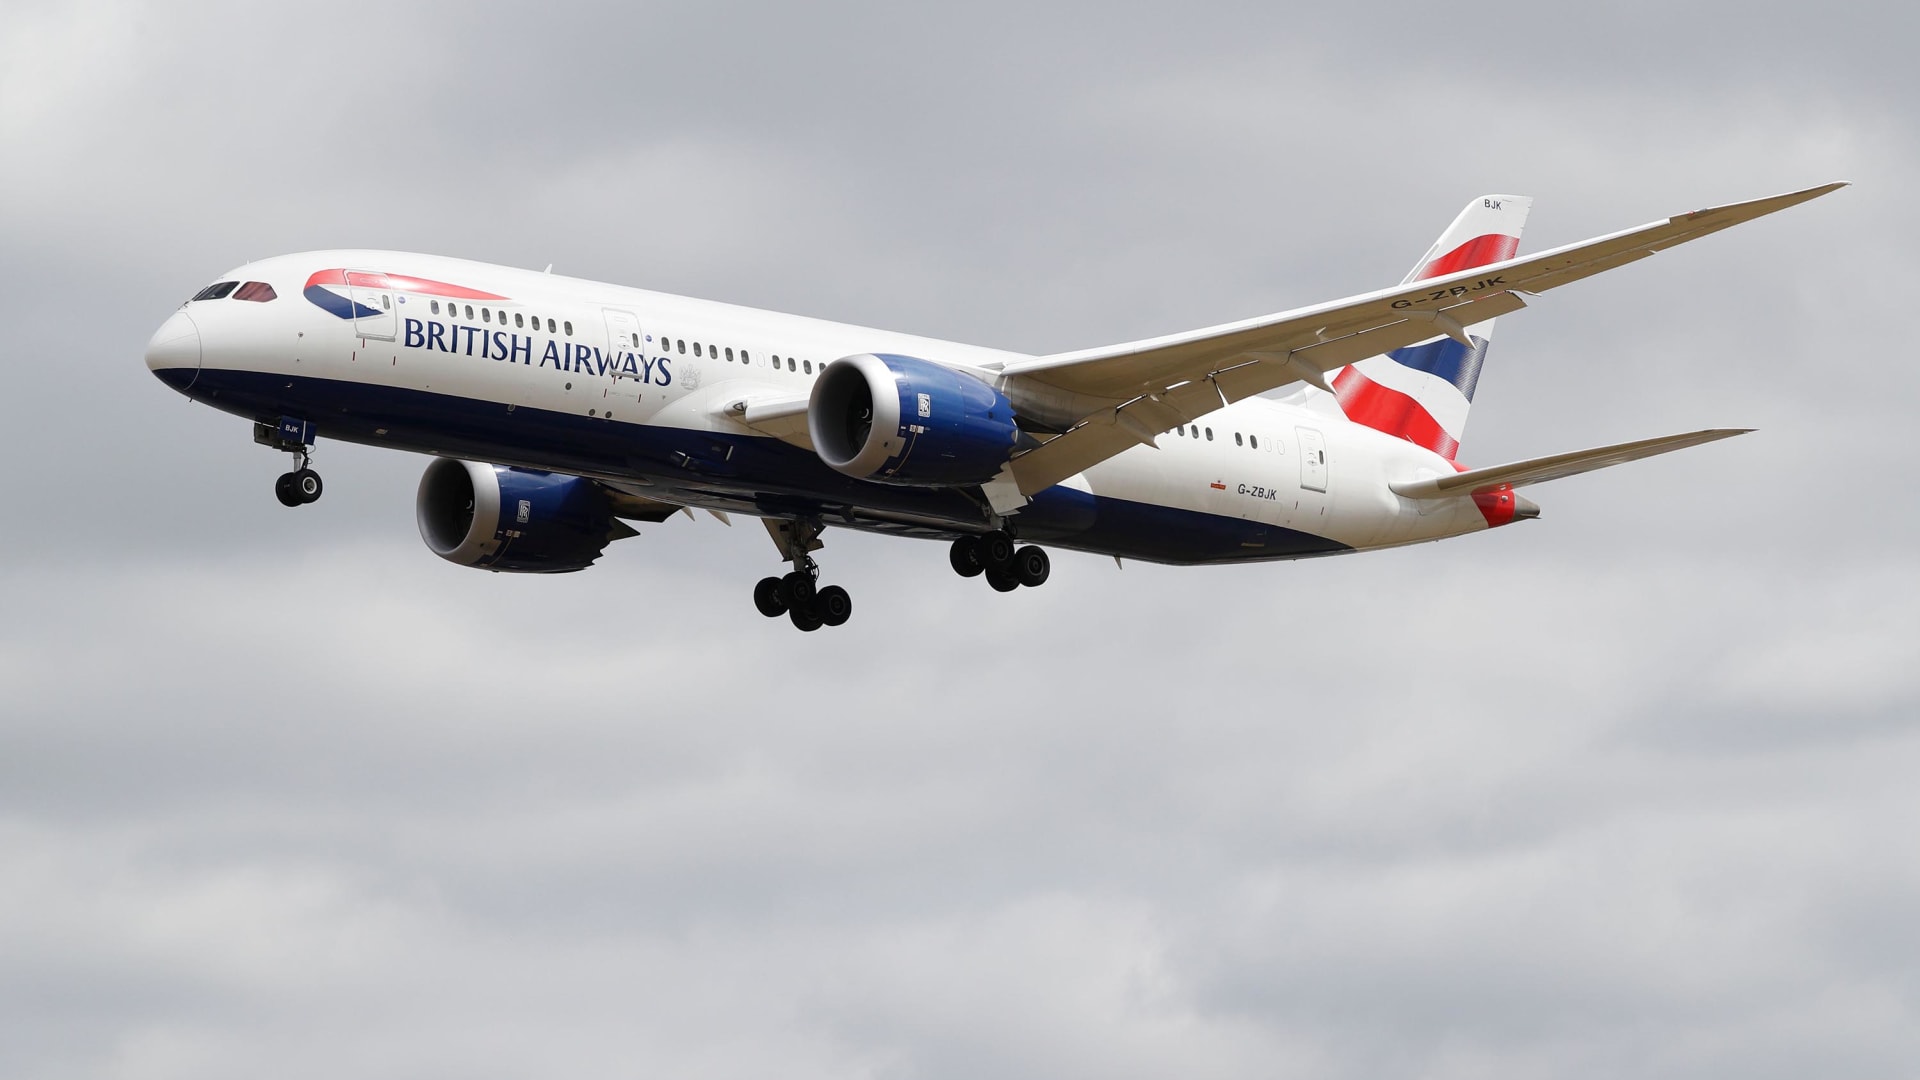 الخطوط الجوية القطرية تدعم الخطوط البريطانية وأيبيريا بـ817 مليون دولار